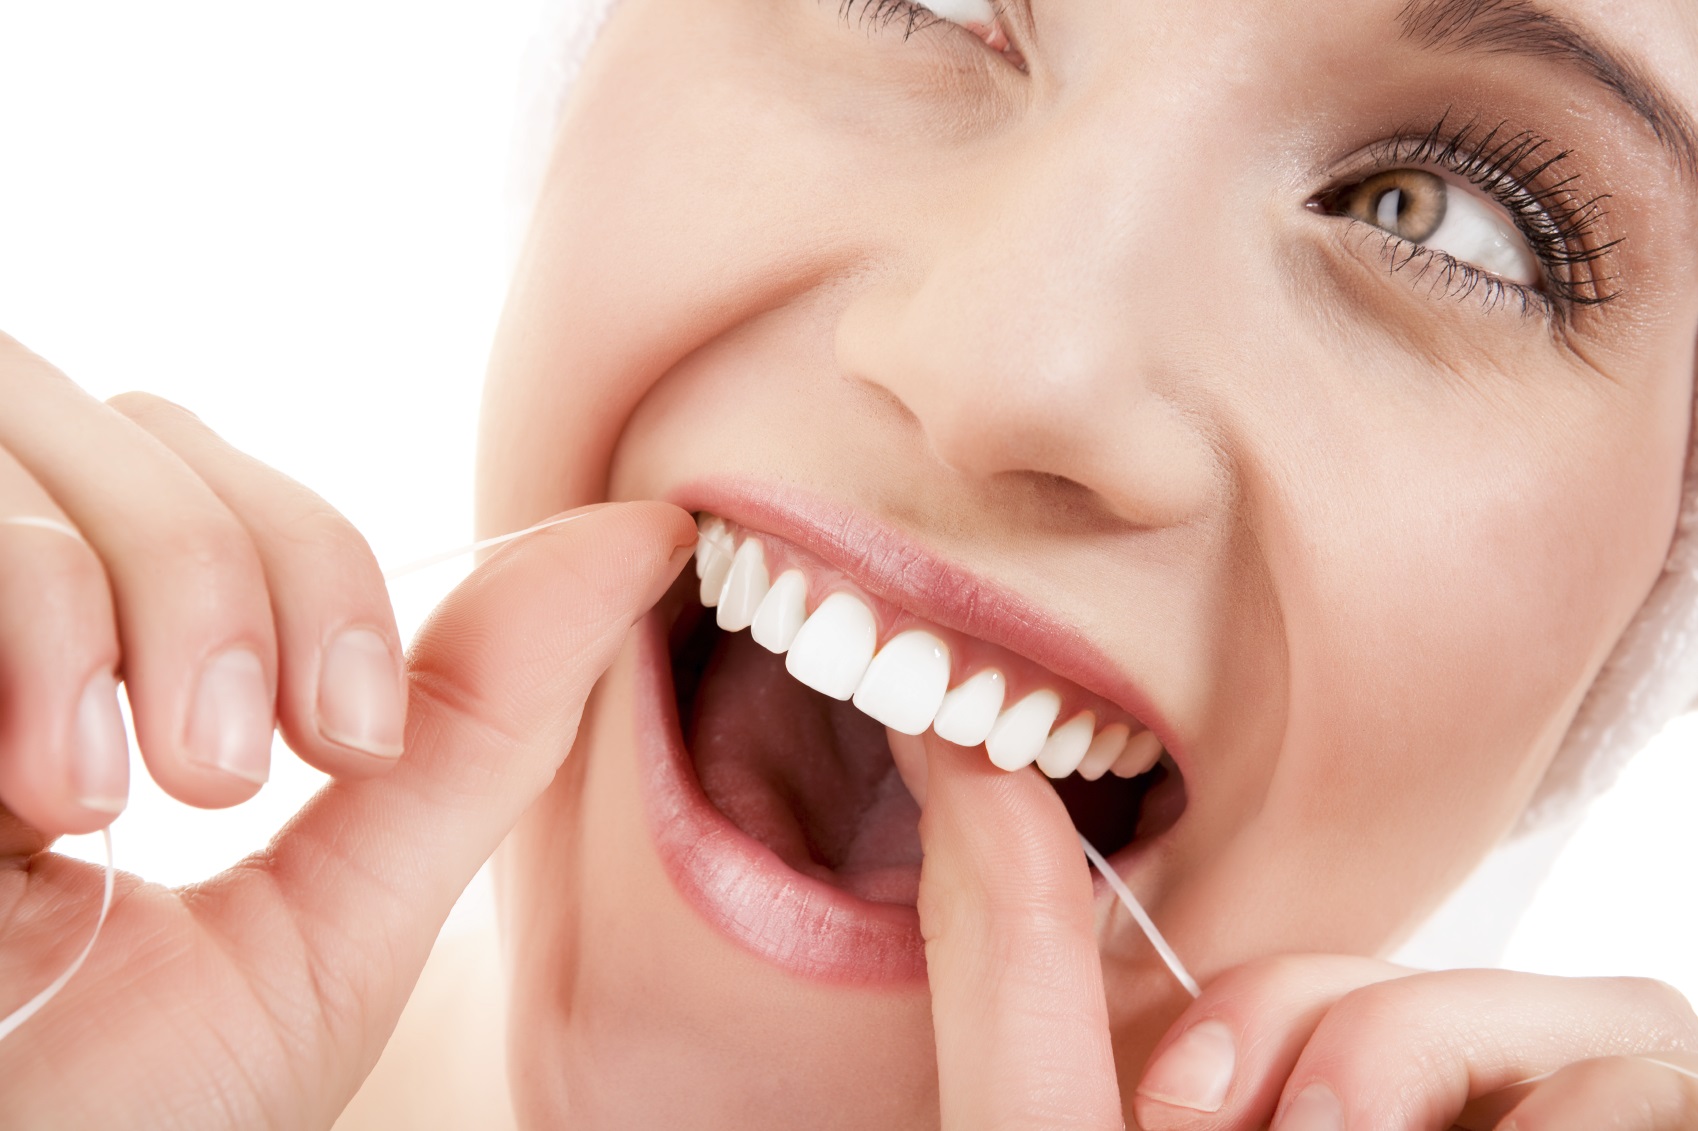 14 conseils simples pour éviter les caries et protéger vos dents